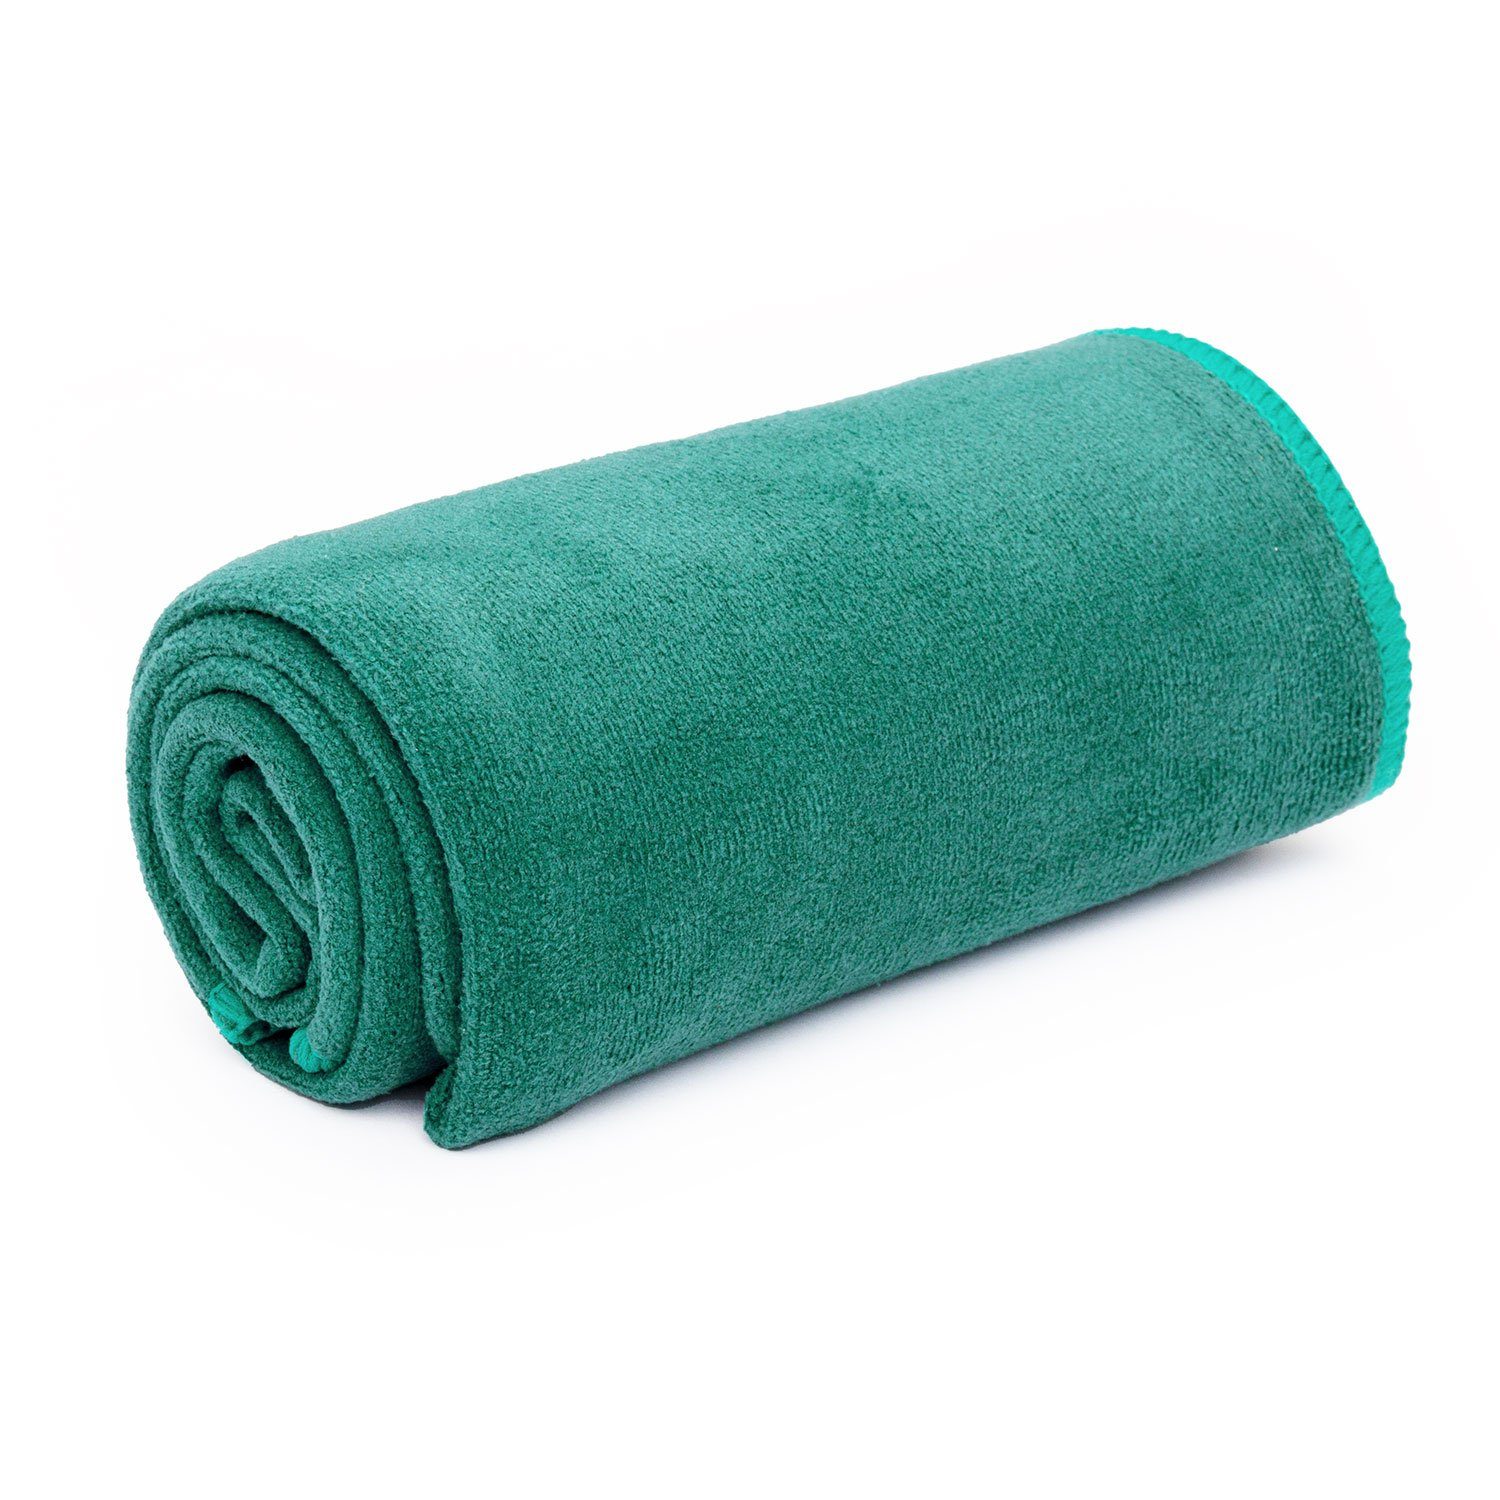 L petrol FLOW Yogamattenauflage Sporthandtuch bodhi Towel